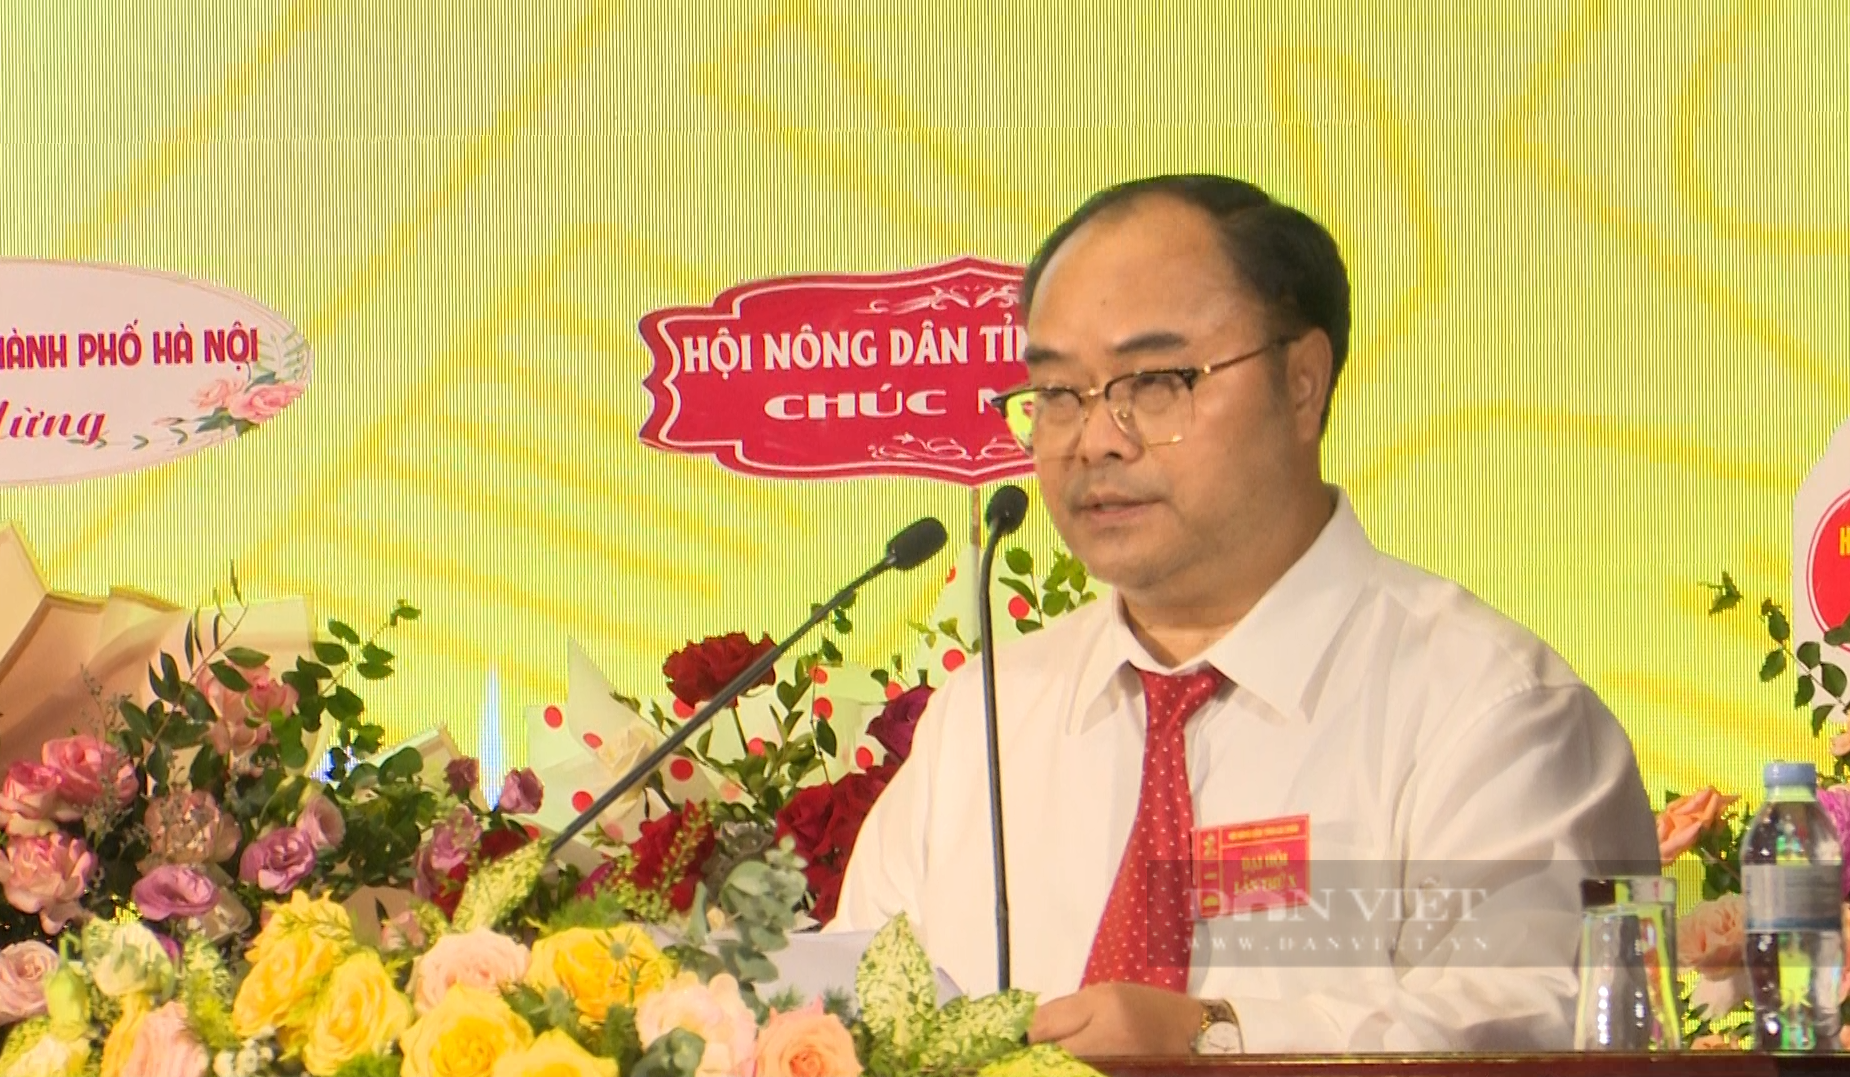 Phó Chủ tịch BCH Hội NDVN Nguyễn Xuân Định gợi mở 5 vấn đề tại Đại hội đại biểu HND tỉnh Lai Châu - Ảnh 3.